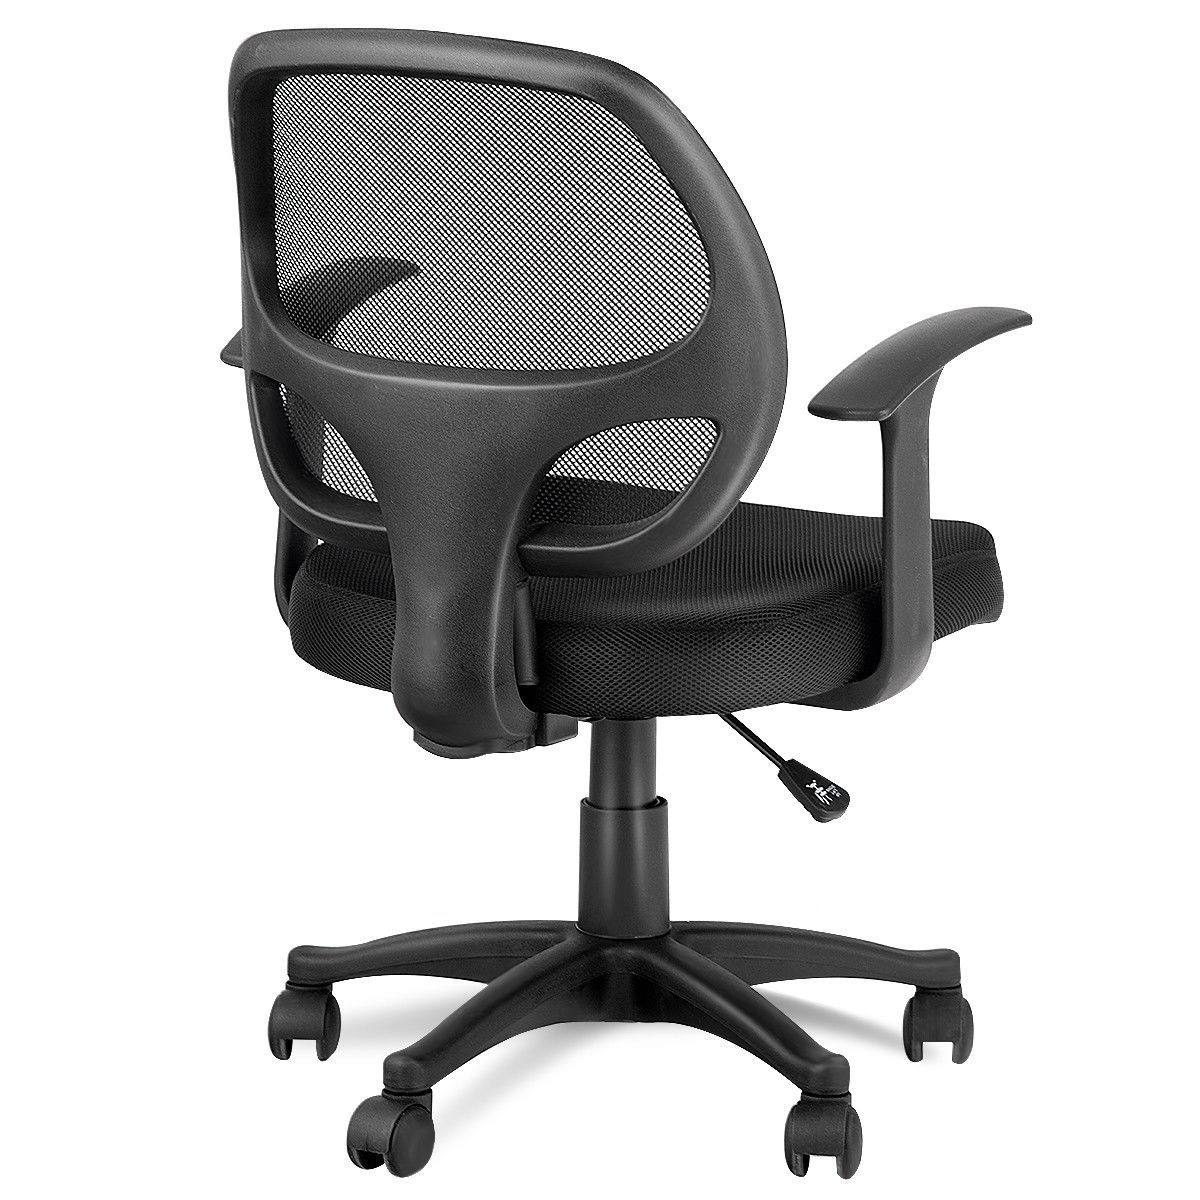 Smugdesk 0581F Ergonomic Office Mesh Computer Desk Swivel Task Chair with Adjustable Armrests Black